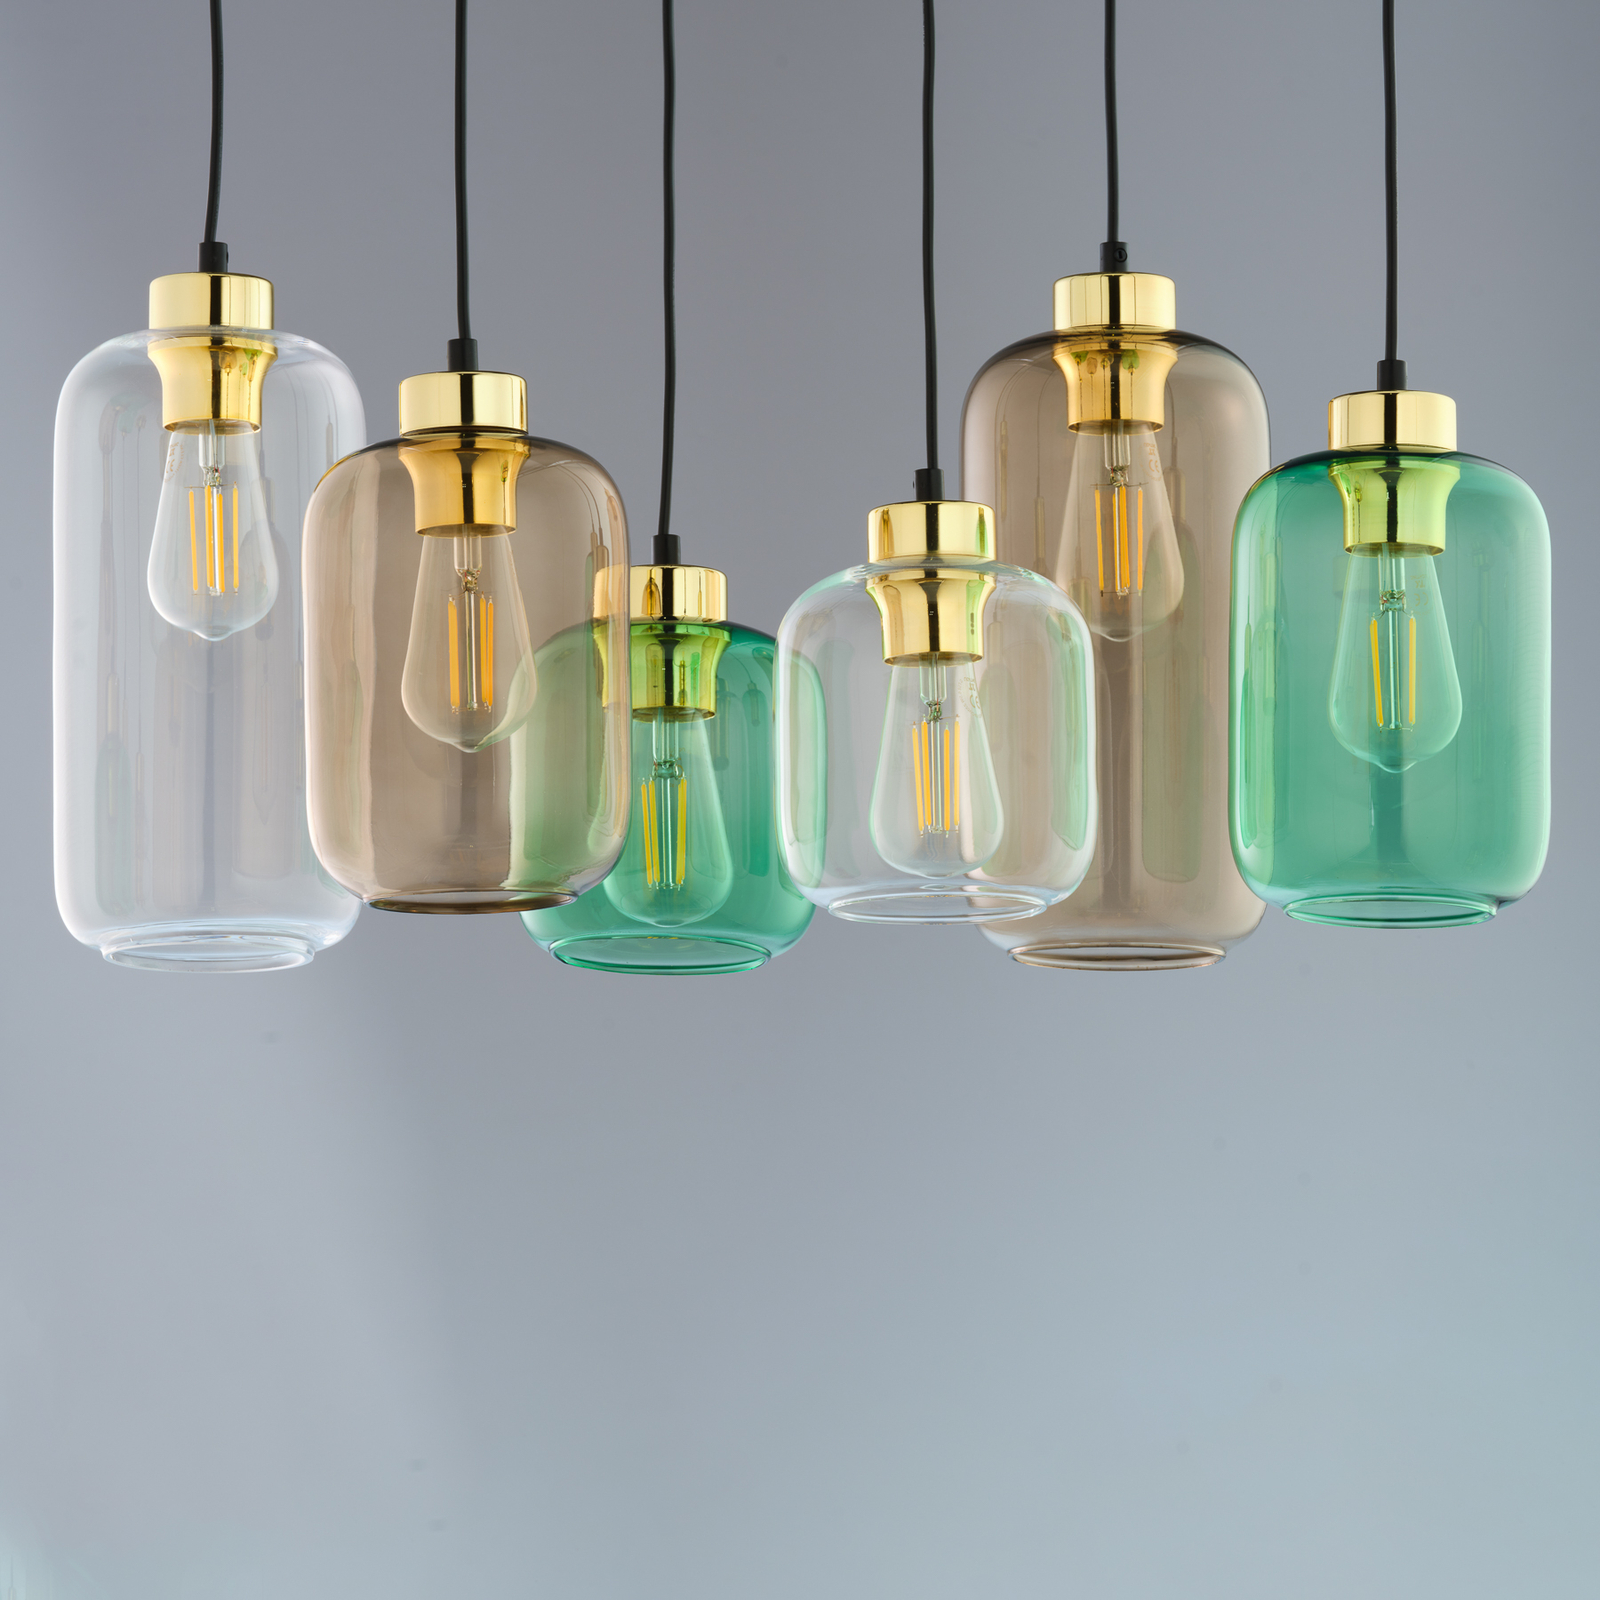 Marco Green hanglamp, 6-lamps helder/groen/bruin